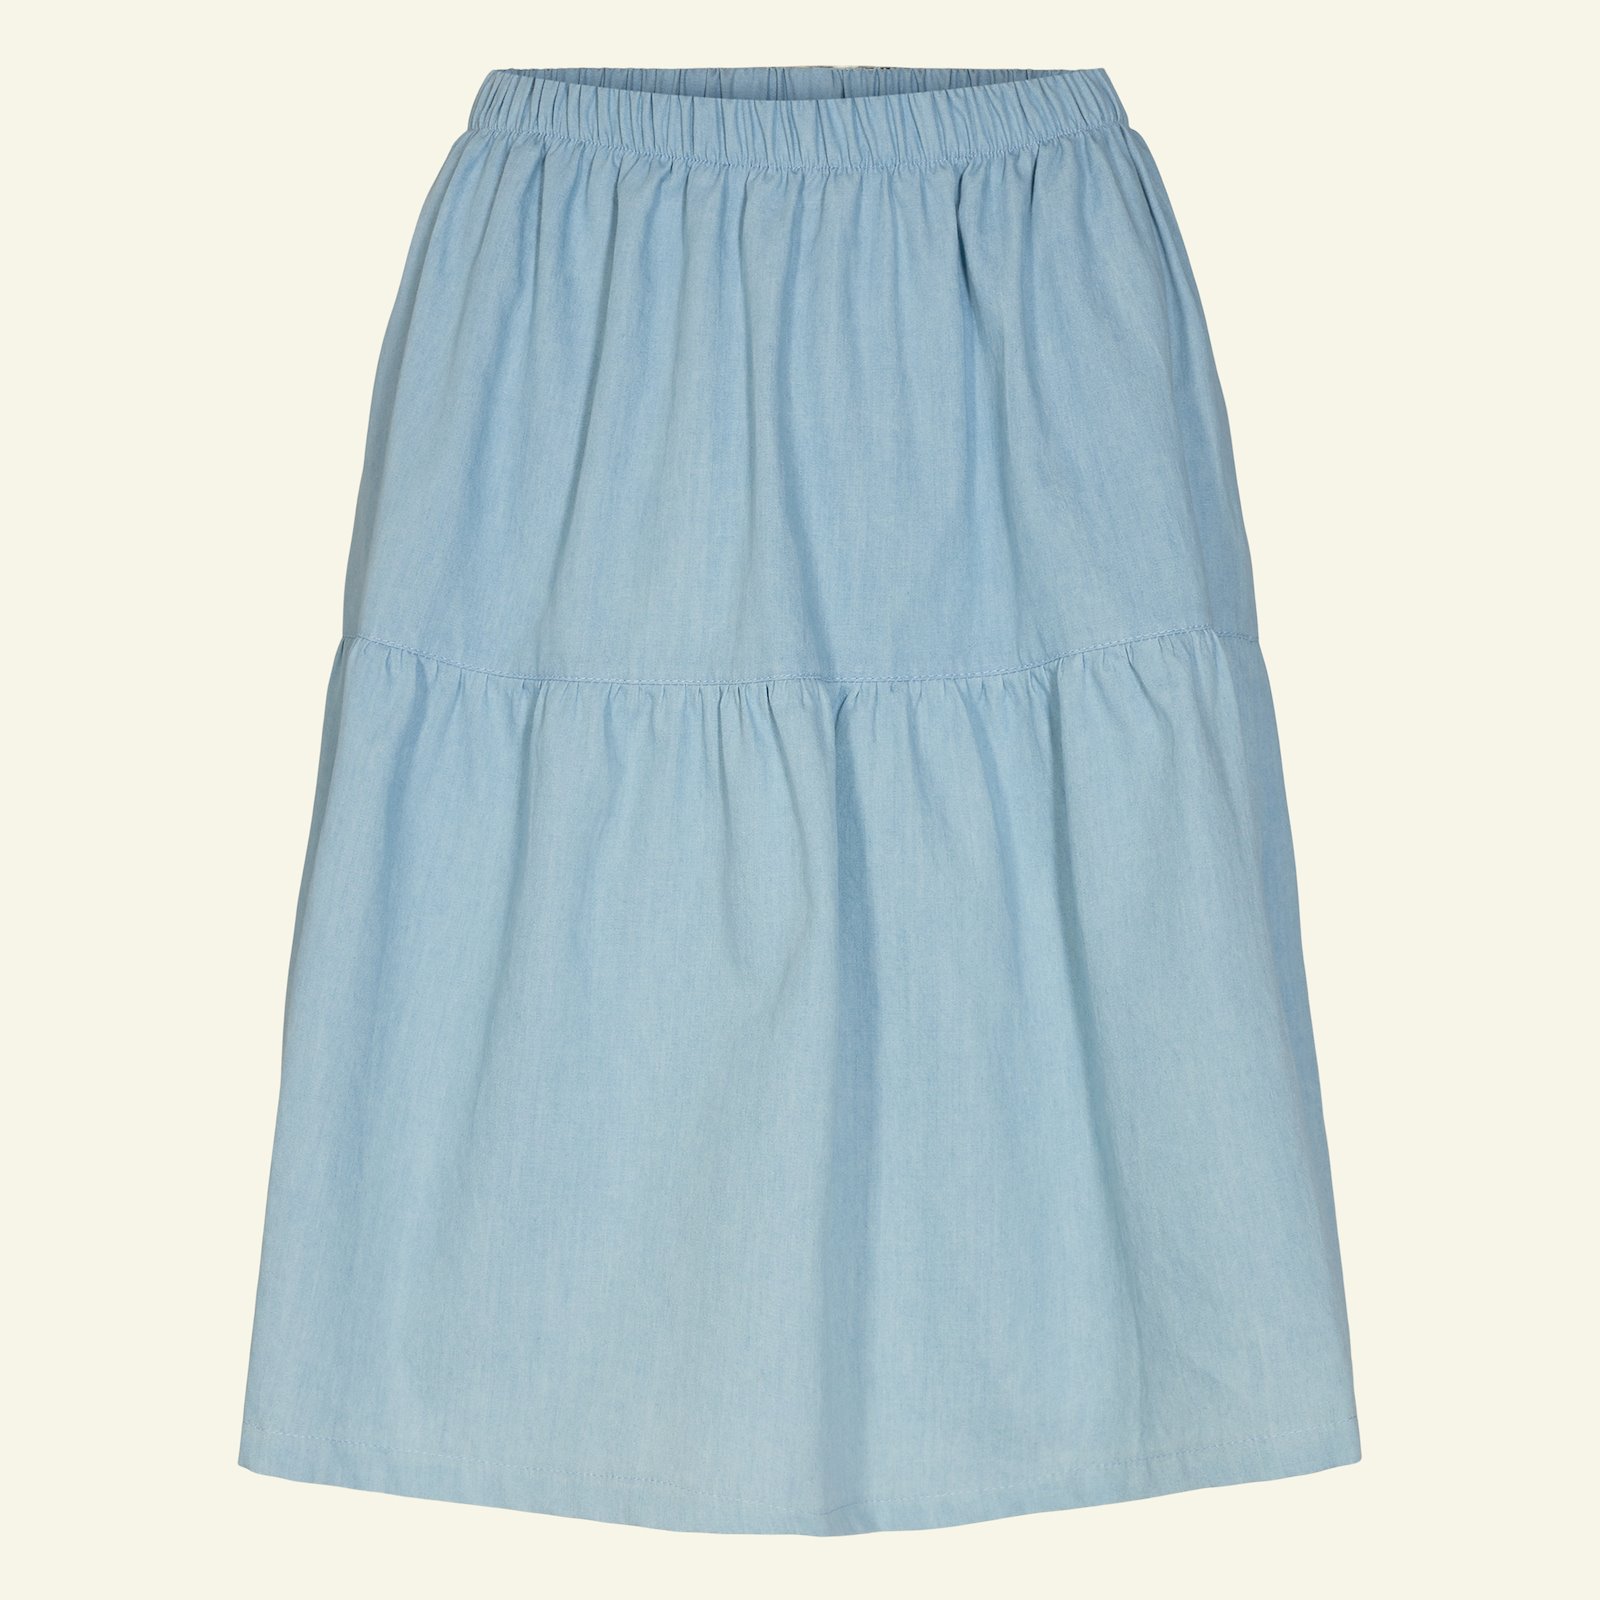 Split level skirt, XL p21046_400312_sskit